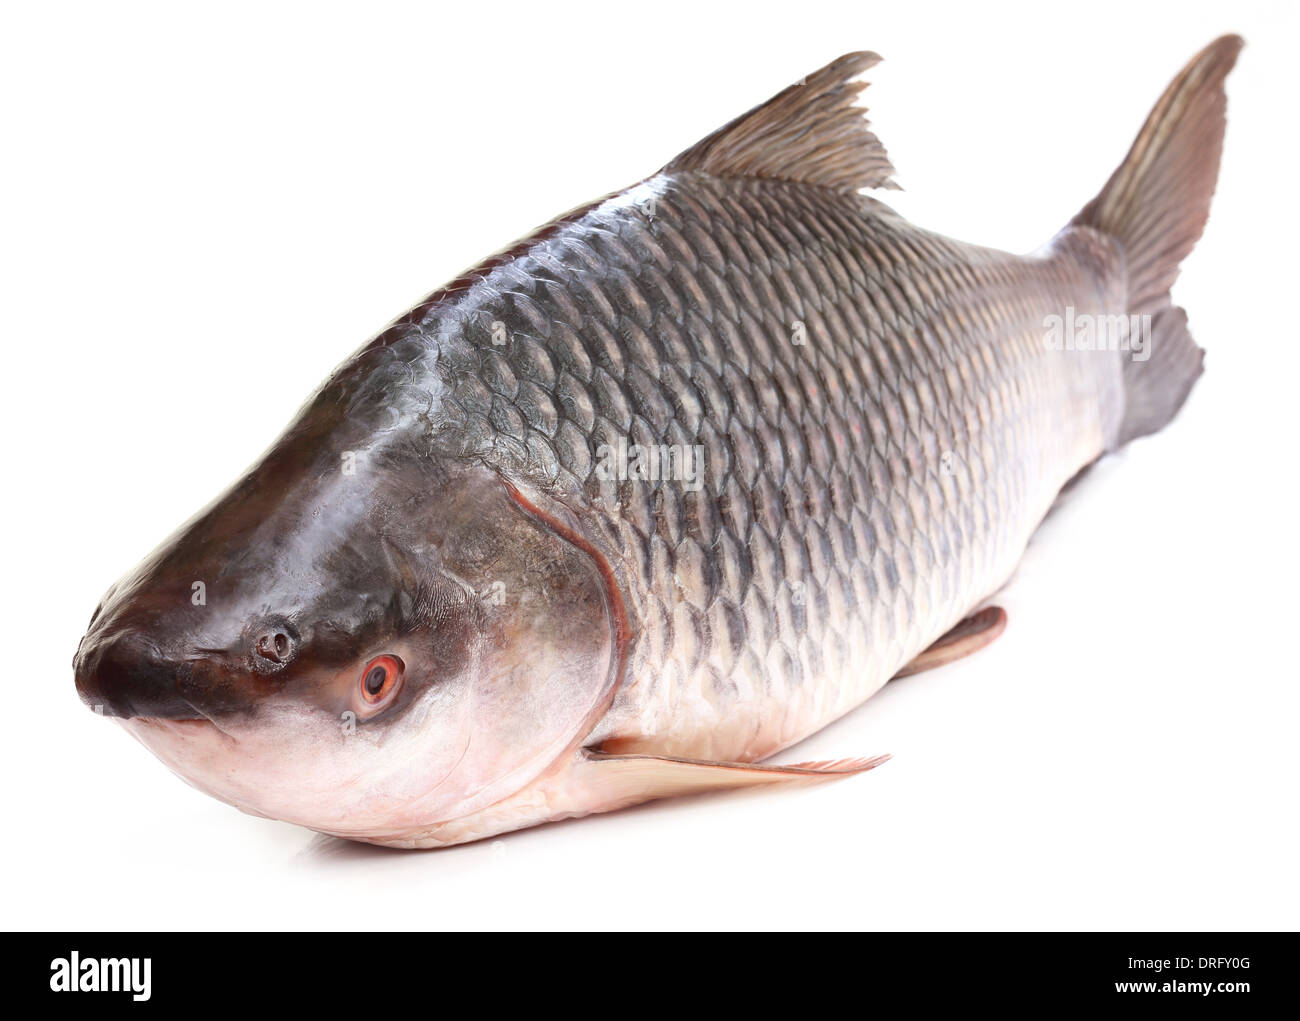 Beliebte Rohu oder Rohit Fische des indischen Subkontinents Stockfoto